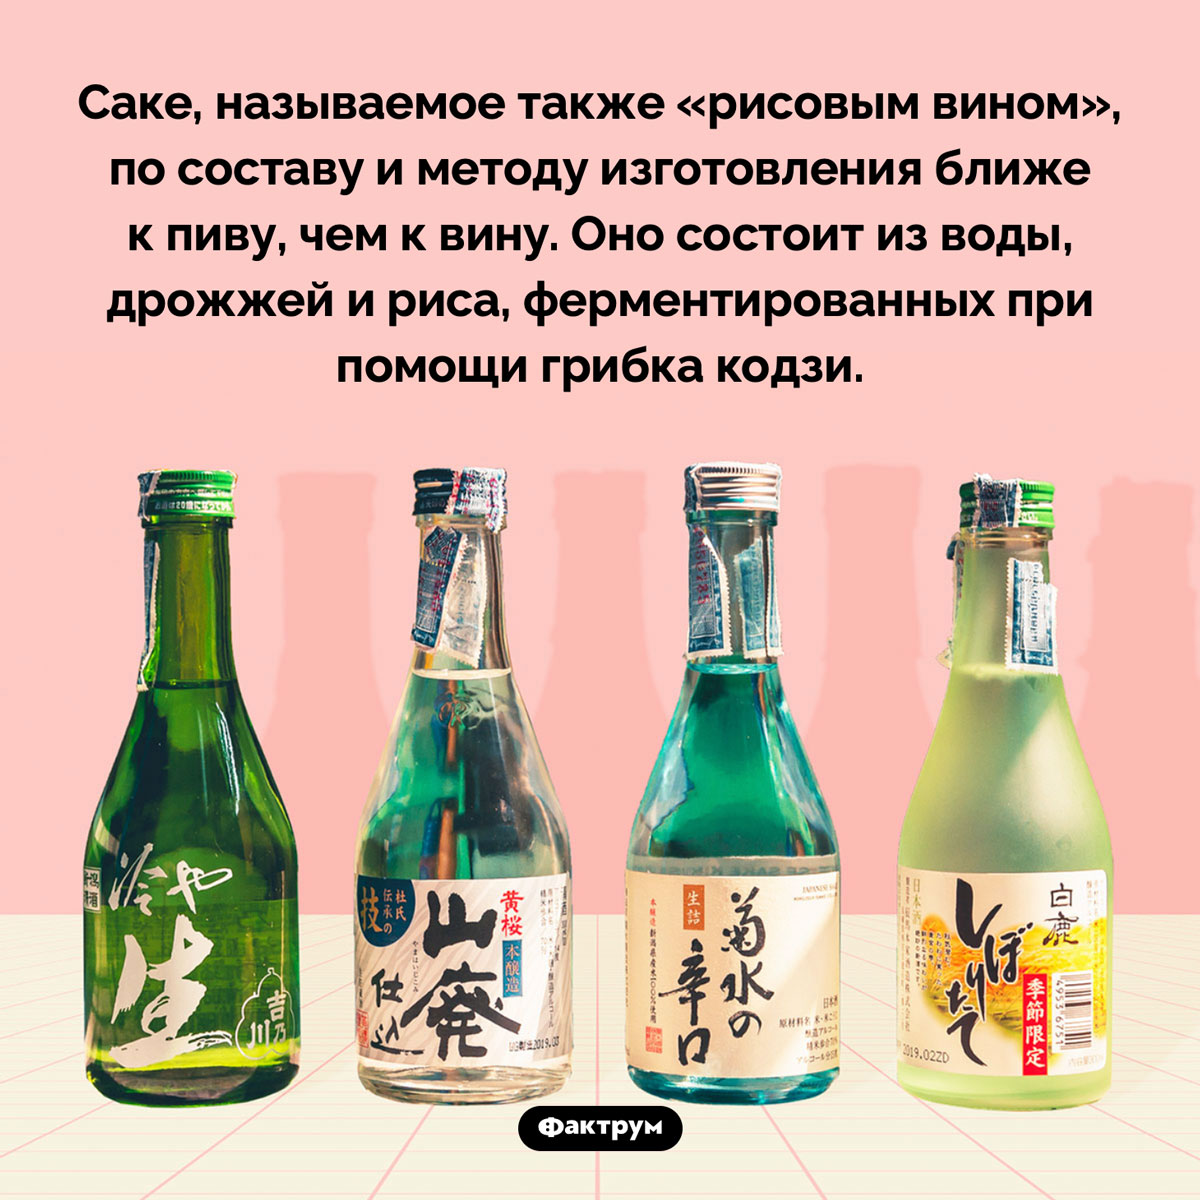 Саке ближе к пиву, чем к вину. Саке, называемое также «рисовым вином», по составу и методу изготовления ближе к пиву, чем к вину. Оно состоит из воды, дрожжей и риса, ферментированных при помощи грибка кодзи.